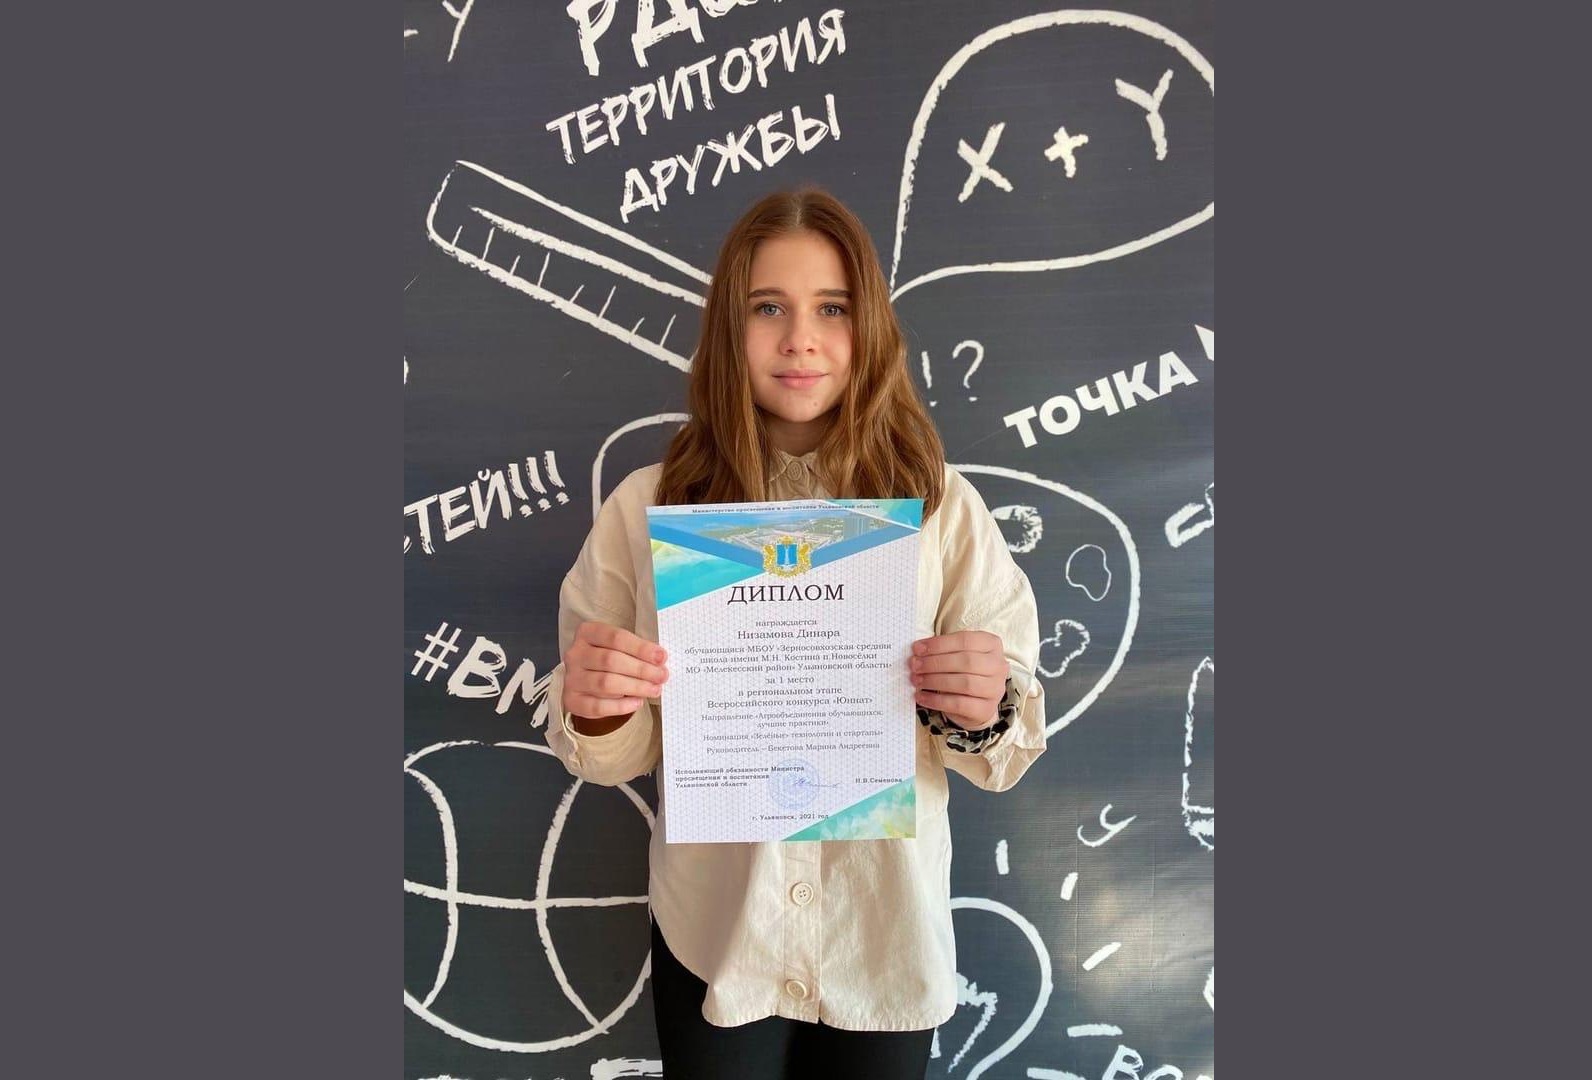 Наша ученица Зерносовхозской средней школы Низамова Динара прошла отбор среди обучающихся Ульяновской области.